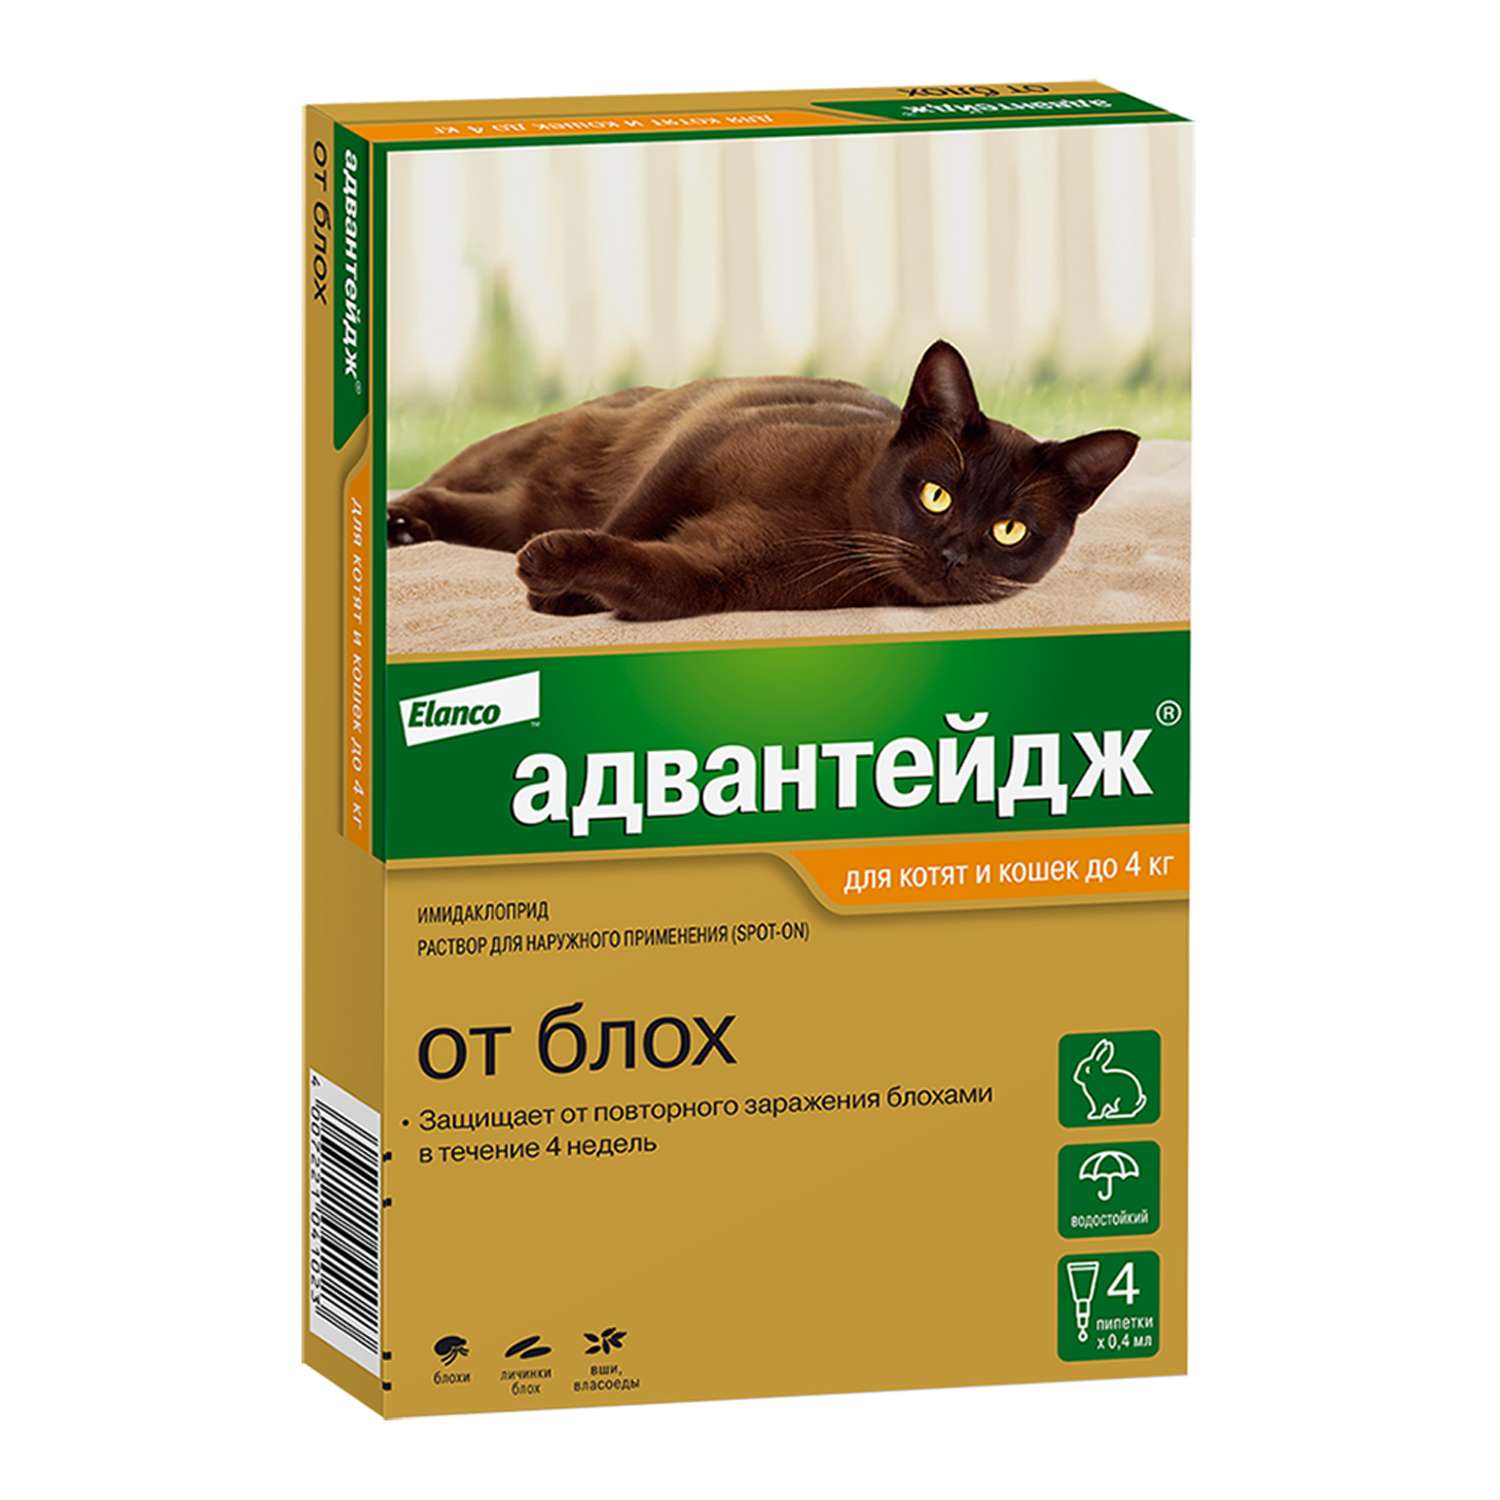 Препарат инсектоакарицидный для кошек Elanco Адвантейдж 0.4мл 4пипетки - фото 1